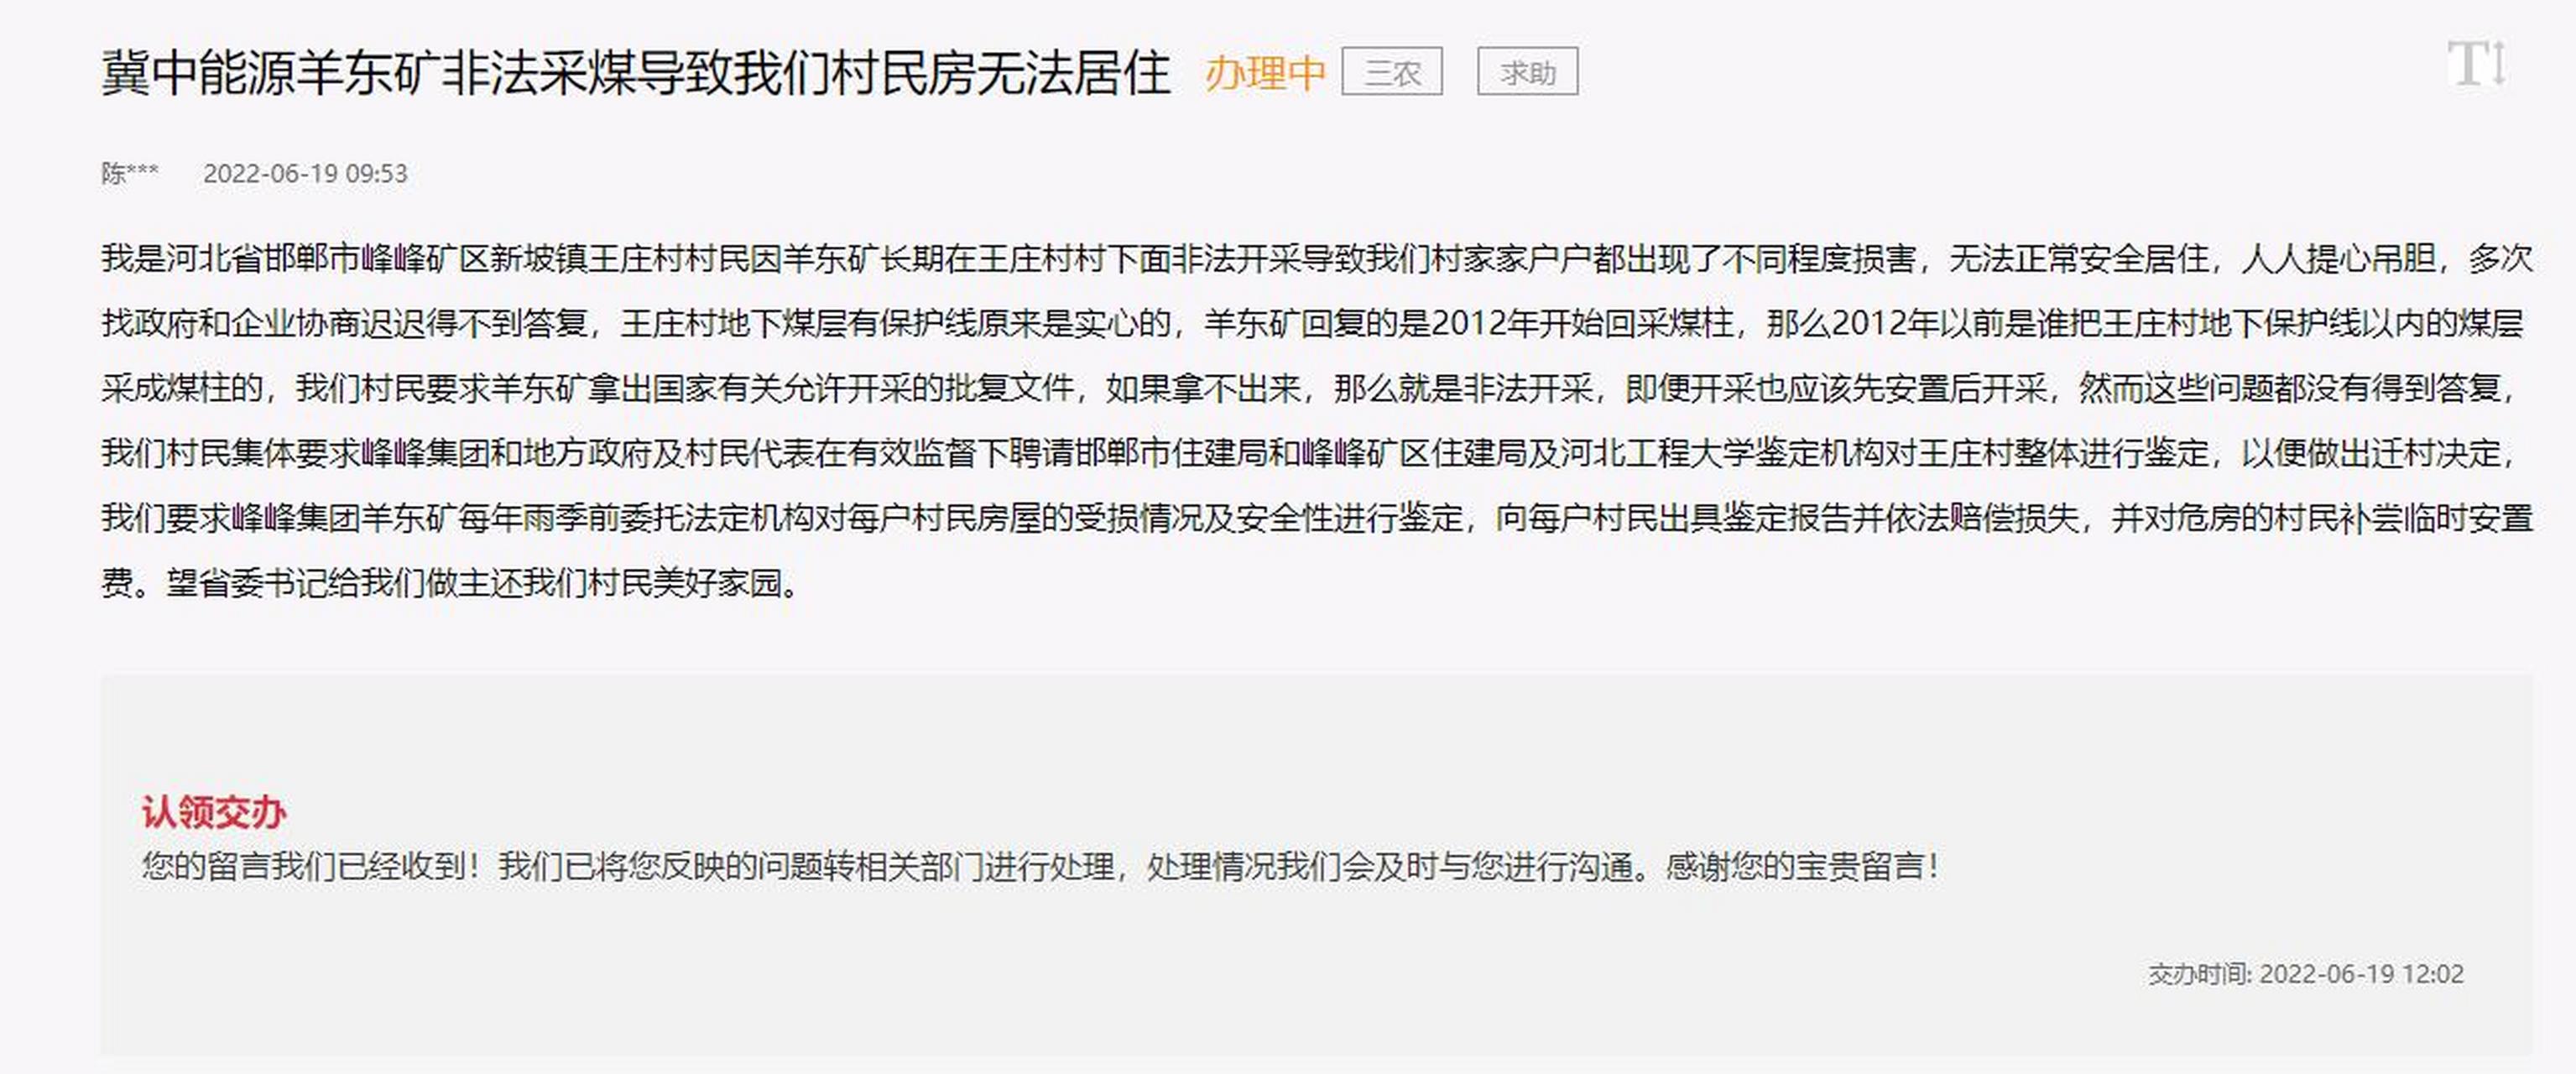 河北:冀中能源羊东矿涉嫌在非法在王庄村下面采煤